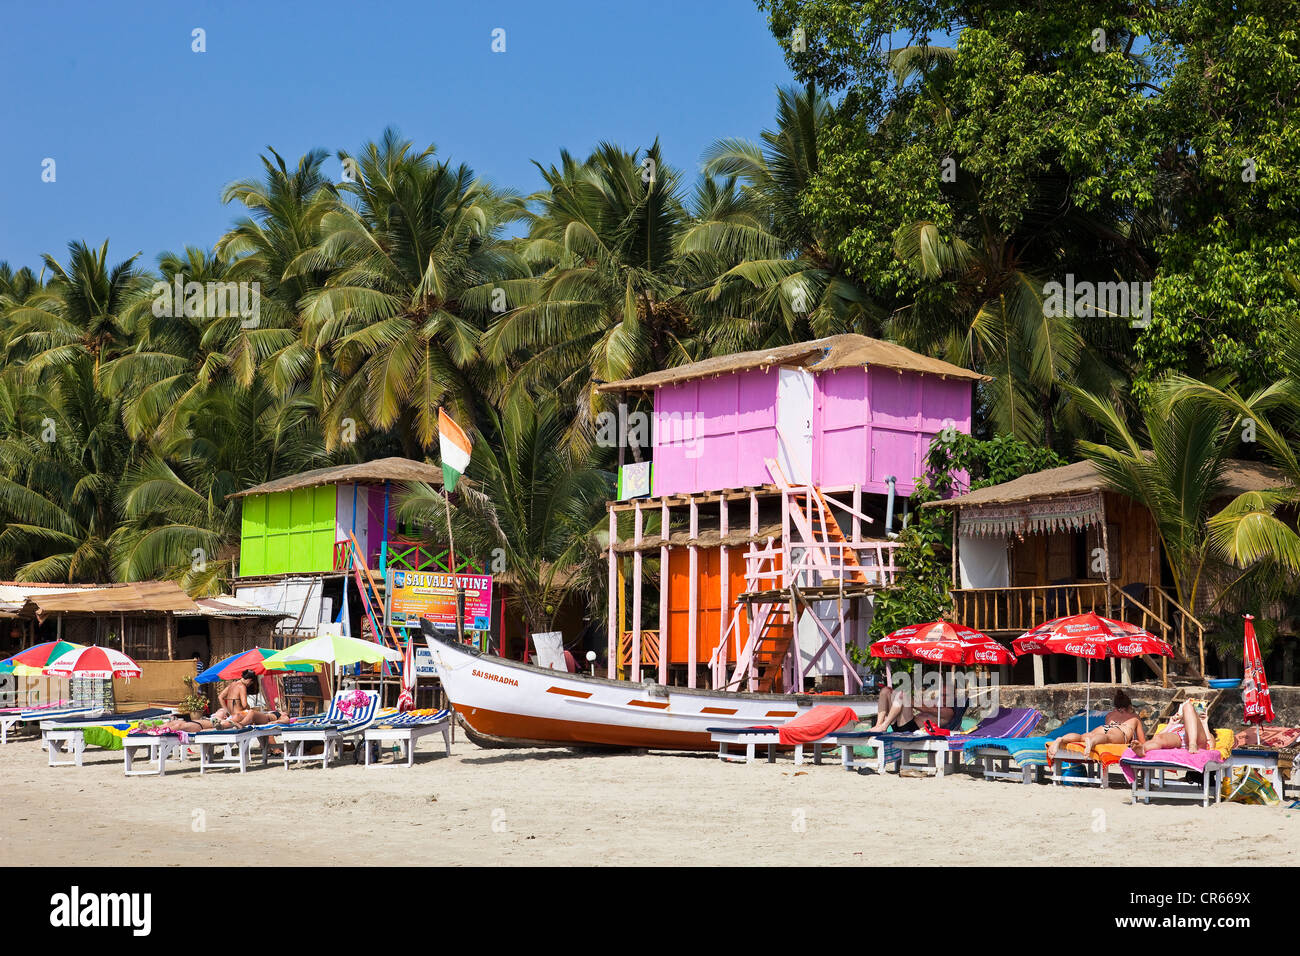 India, stato di Goa, Palolem, spiaggia Foto Stock